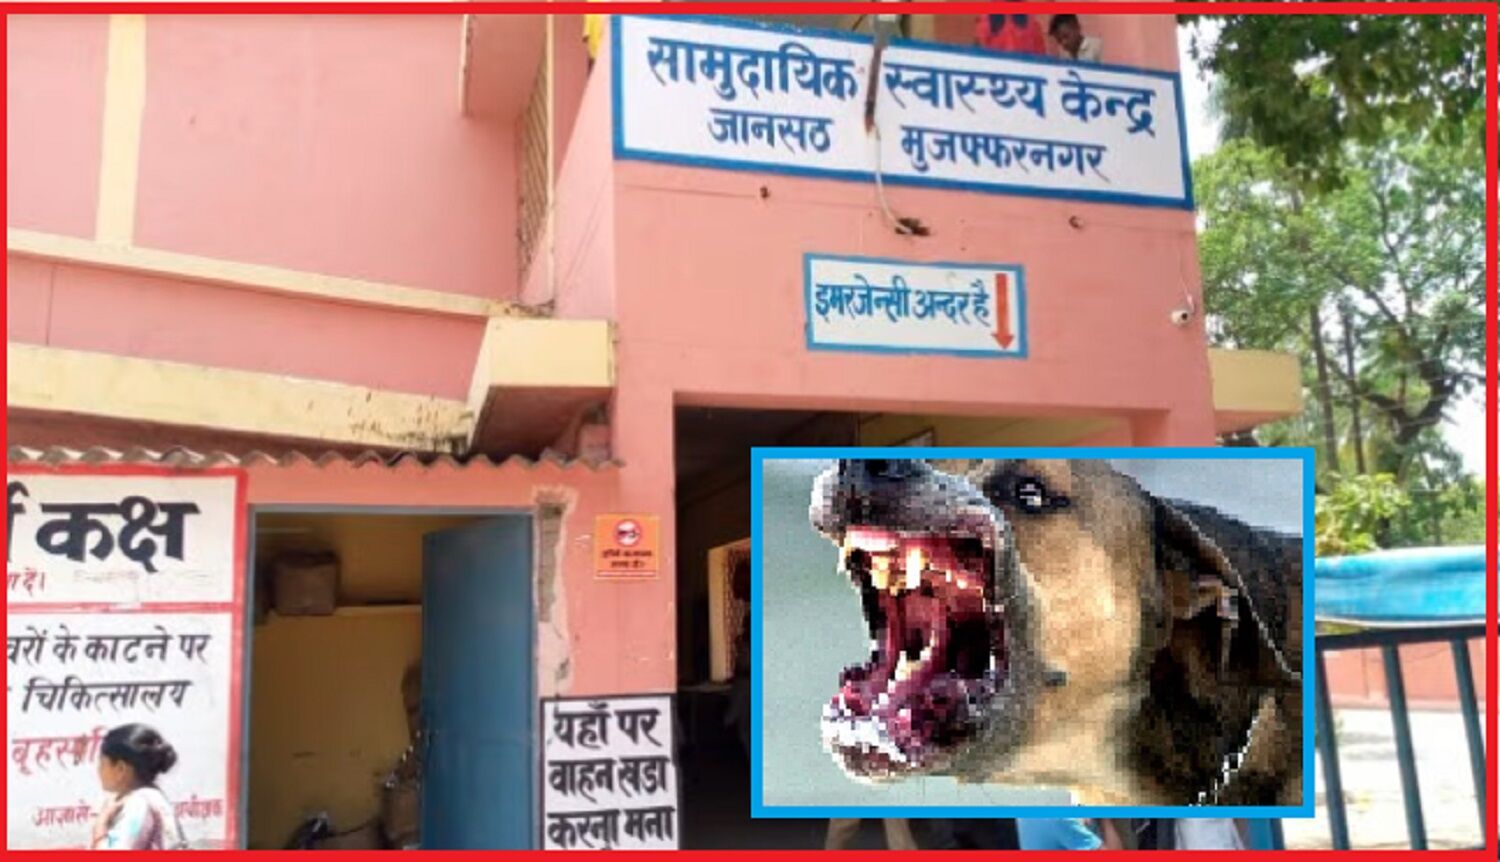 कुत्तों ने नोच डाला दुर्घटना में मौत का शिकार हुए युवक का शव, मुजफ्फरनगर के अस्पताल की मोर्चरी में रखी थी डेडबॉडी